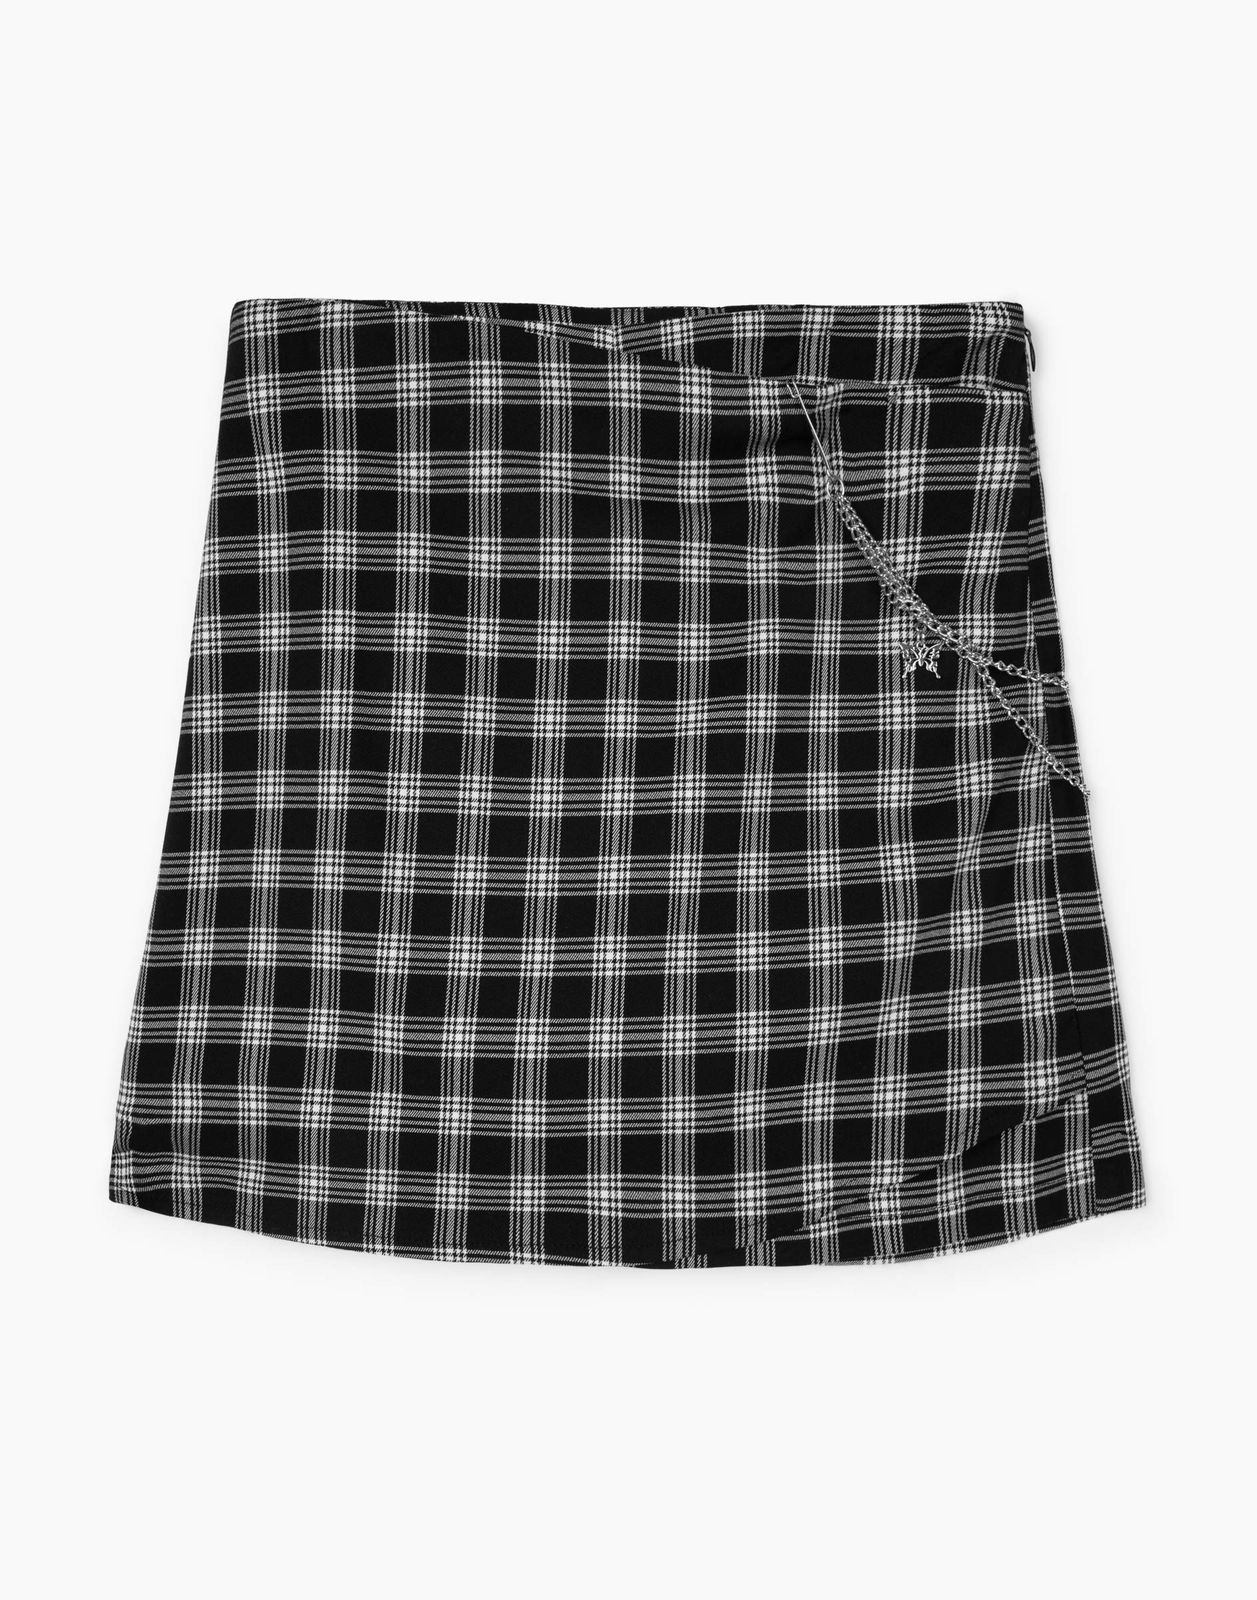 Юбка-шорты для девочки Gloria Jeans GSK017785 черный/белый 7-8л/128